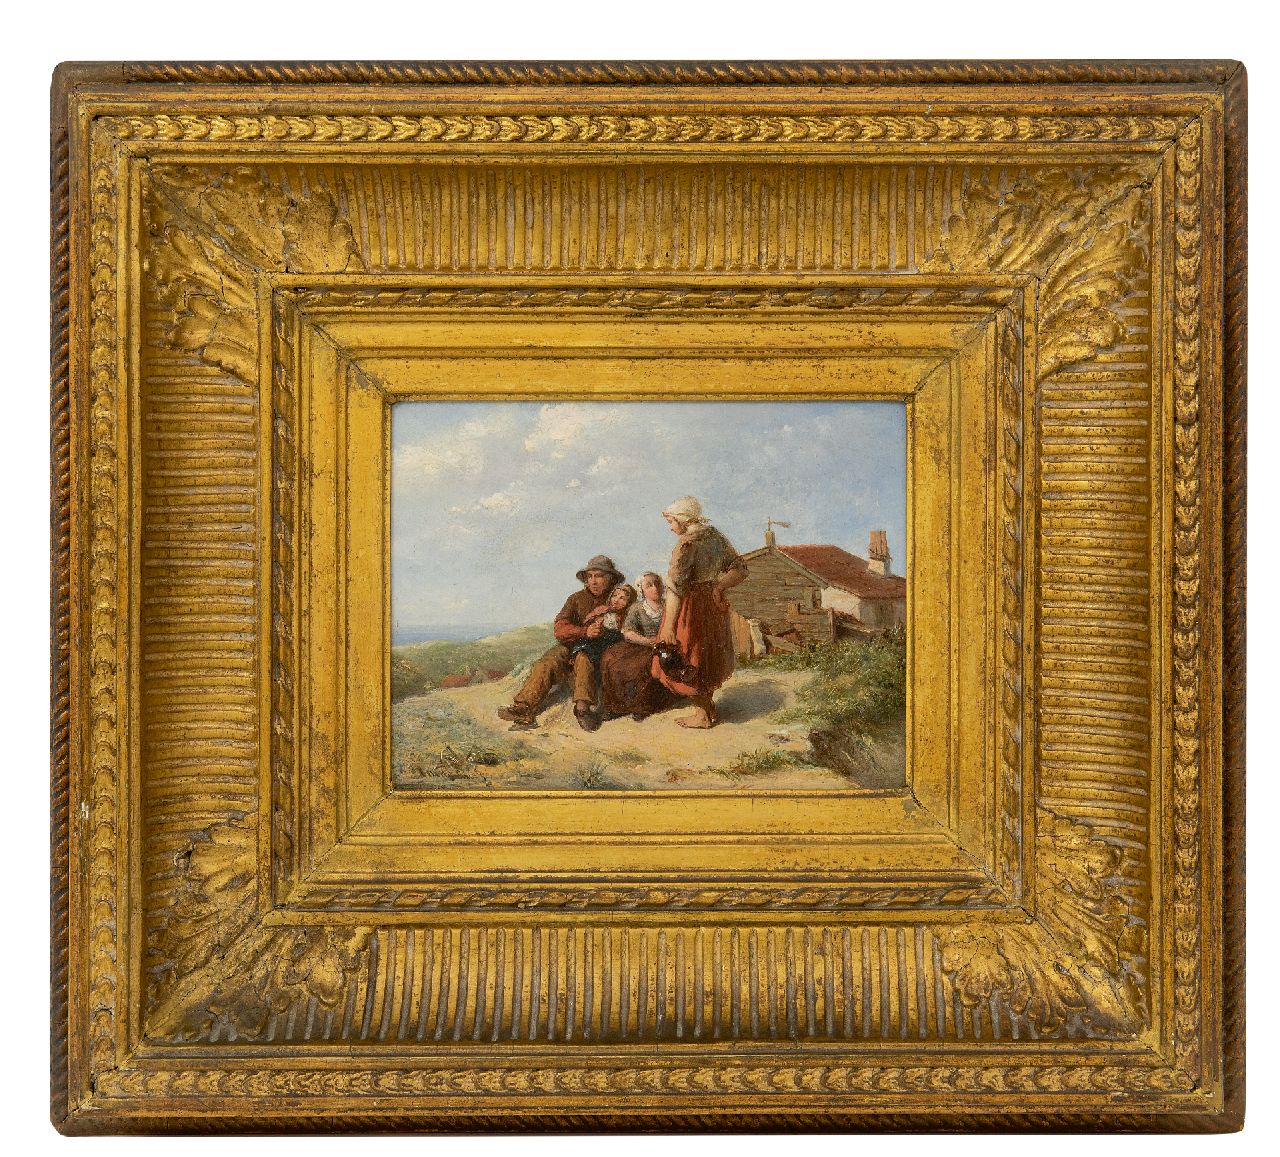 Bus J.M. de | Johannes Martinus de Bus, Vissersfamilie in de duinen, olieverf op paneel 12,7 x 16,6 cm, gesigneerd linksonder